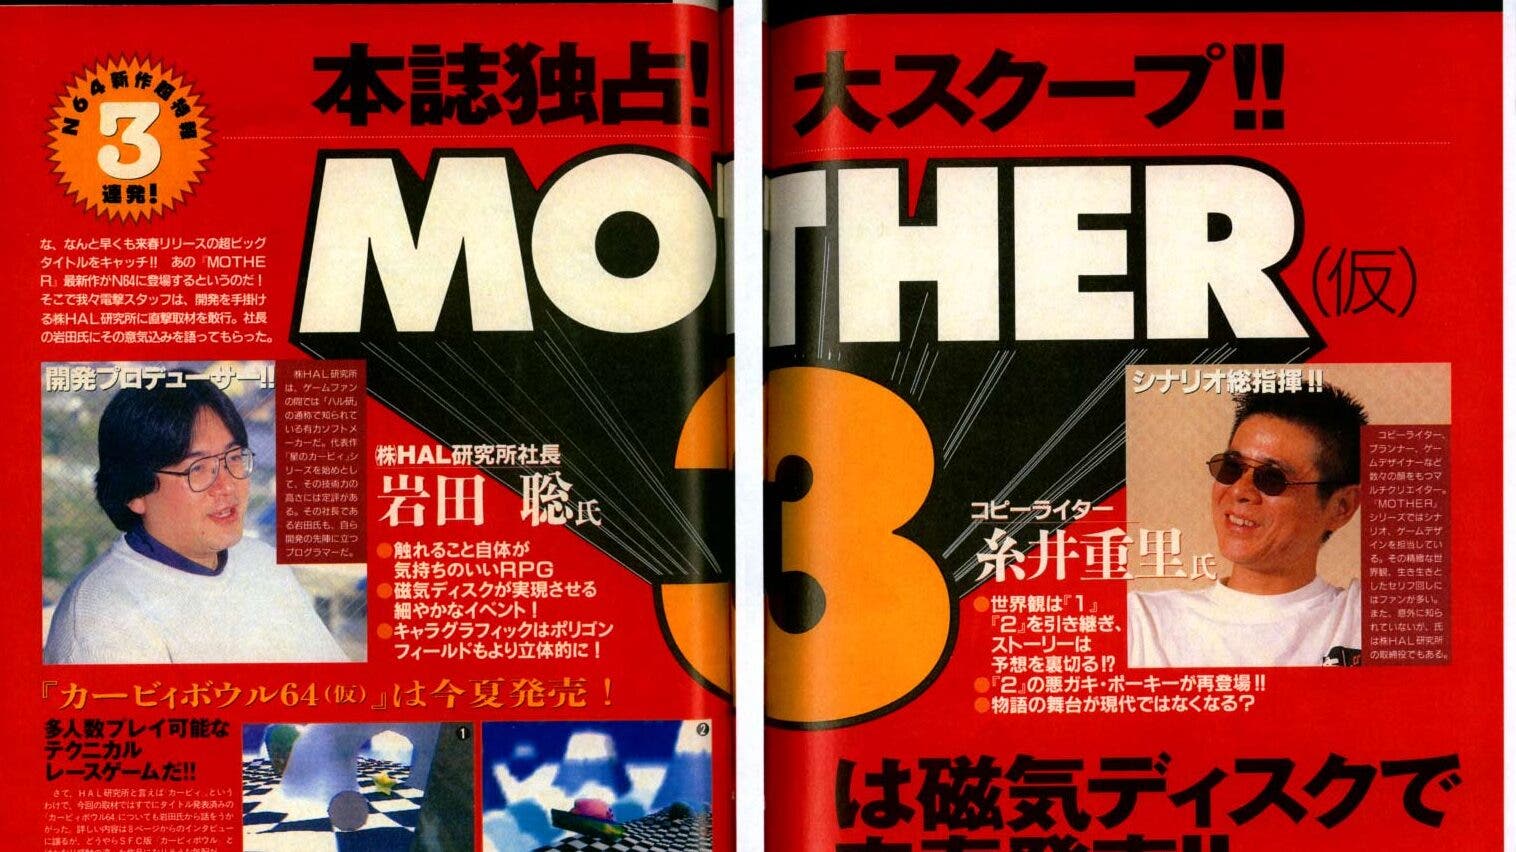 Fan traduce la primera entrevista sobre Mother 3 con Satoru Iwata publicada en Japón en 1996